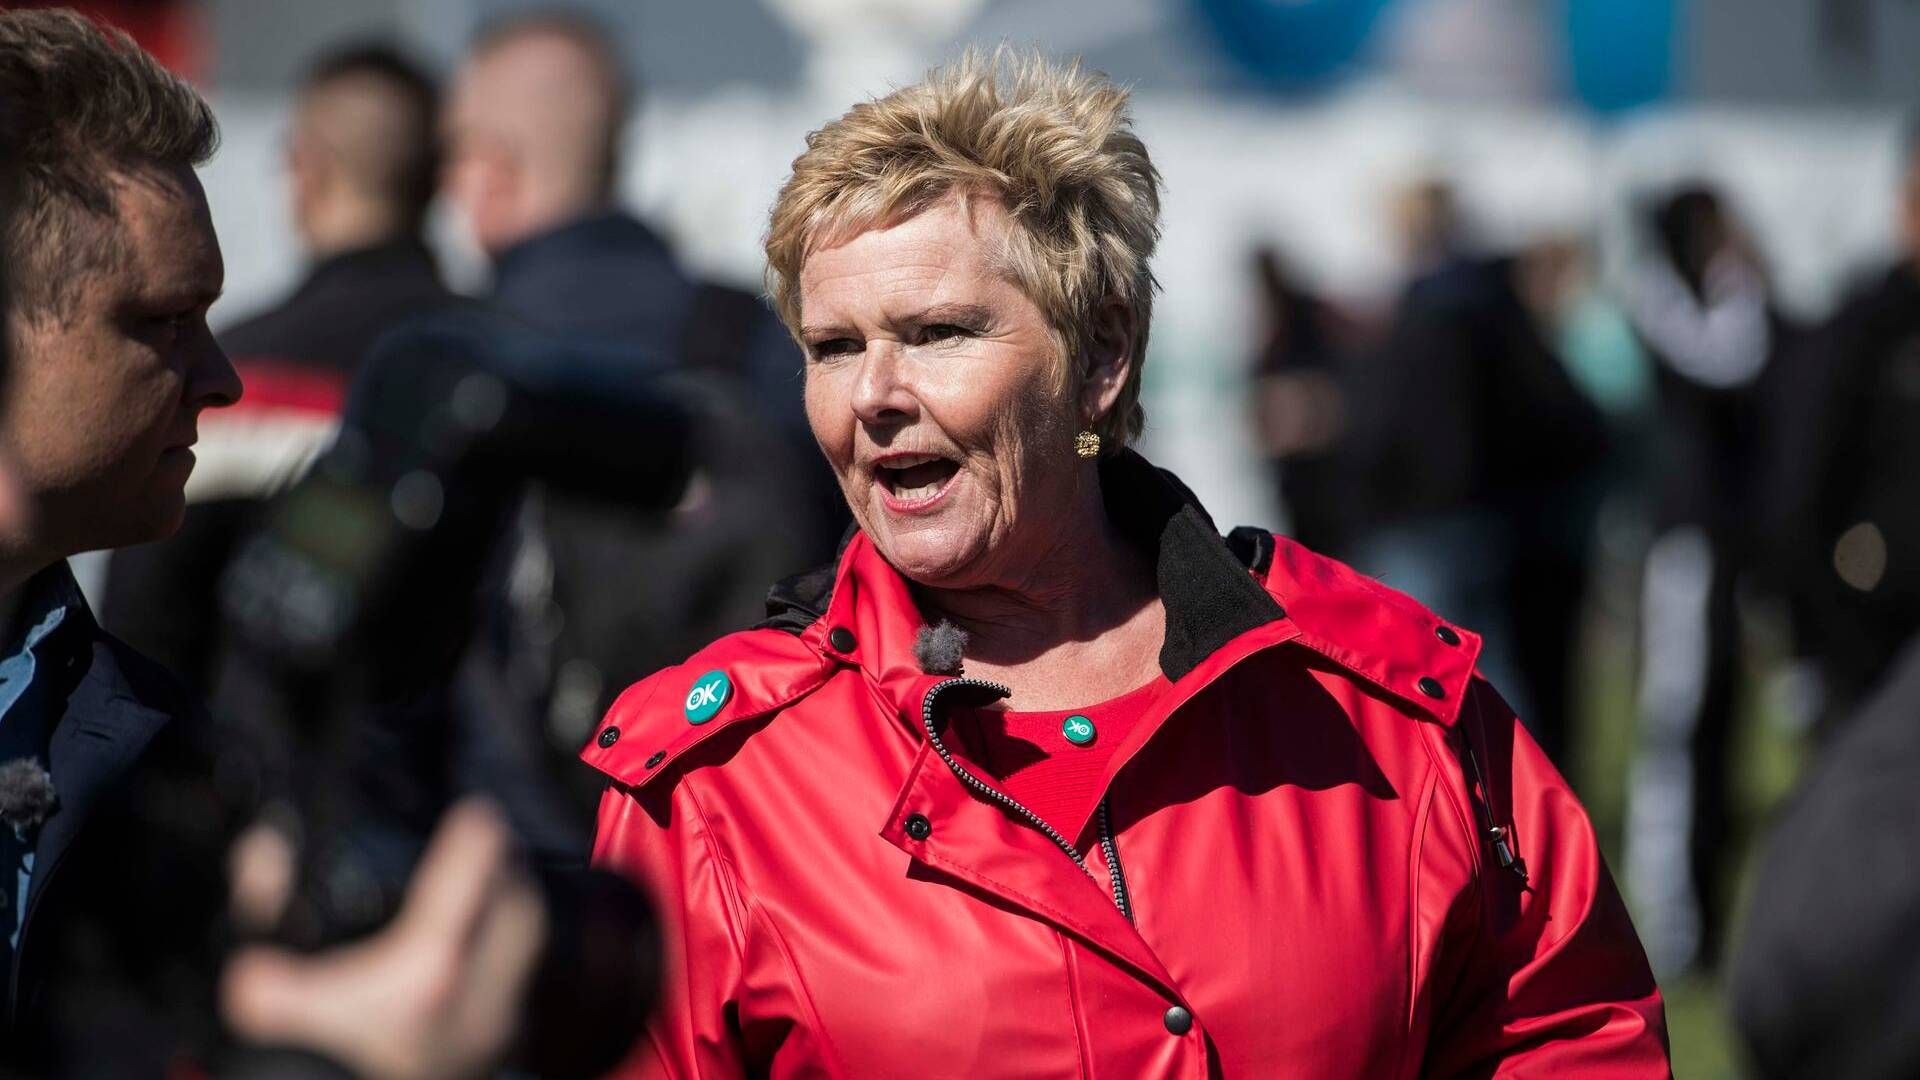 Tdiligere FH-formand Lizette Risgaard afviser nu at have udvist grænseoverskridende adfærd. | Foto: Tidsvilde Stine/Ritzau Scanpix